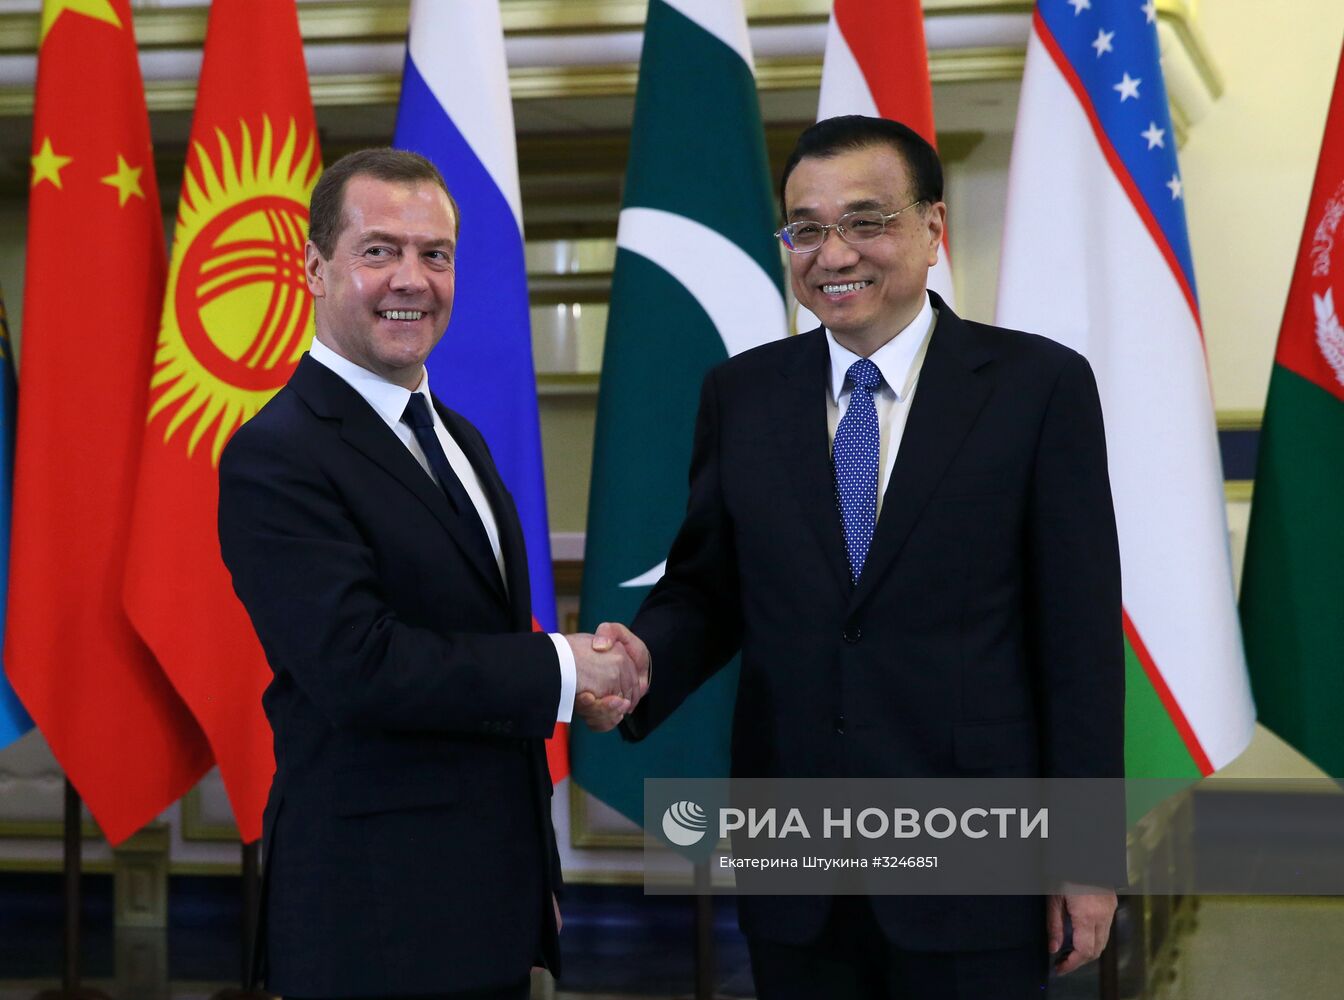 Премьер-министр РФ Д. Медведев провел встречи в рамках саммита глав правительств стран ШОС